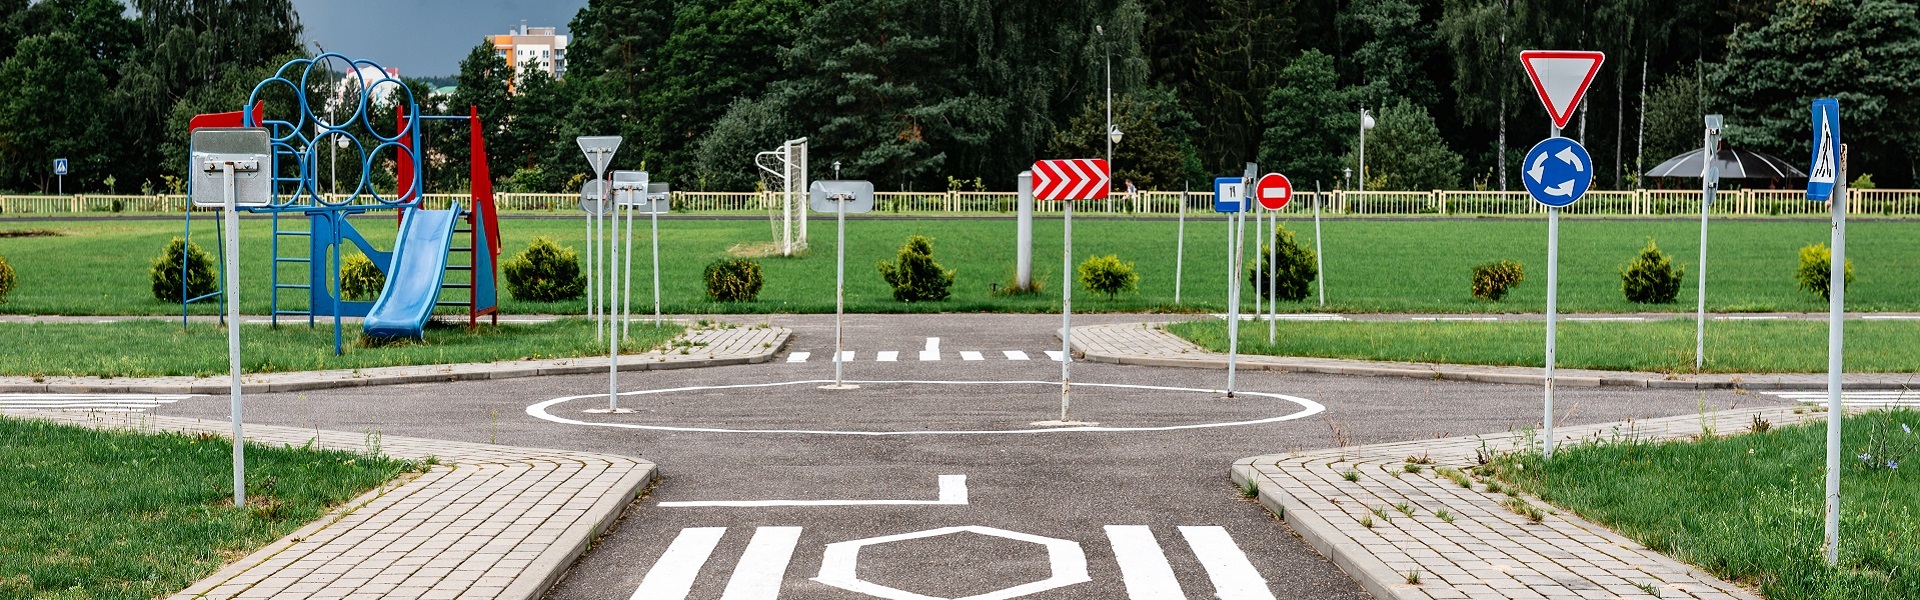 Rent a car Belgrade | Driving school Zurich